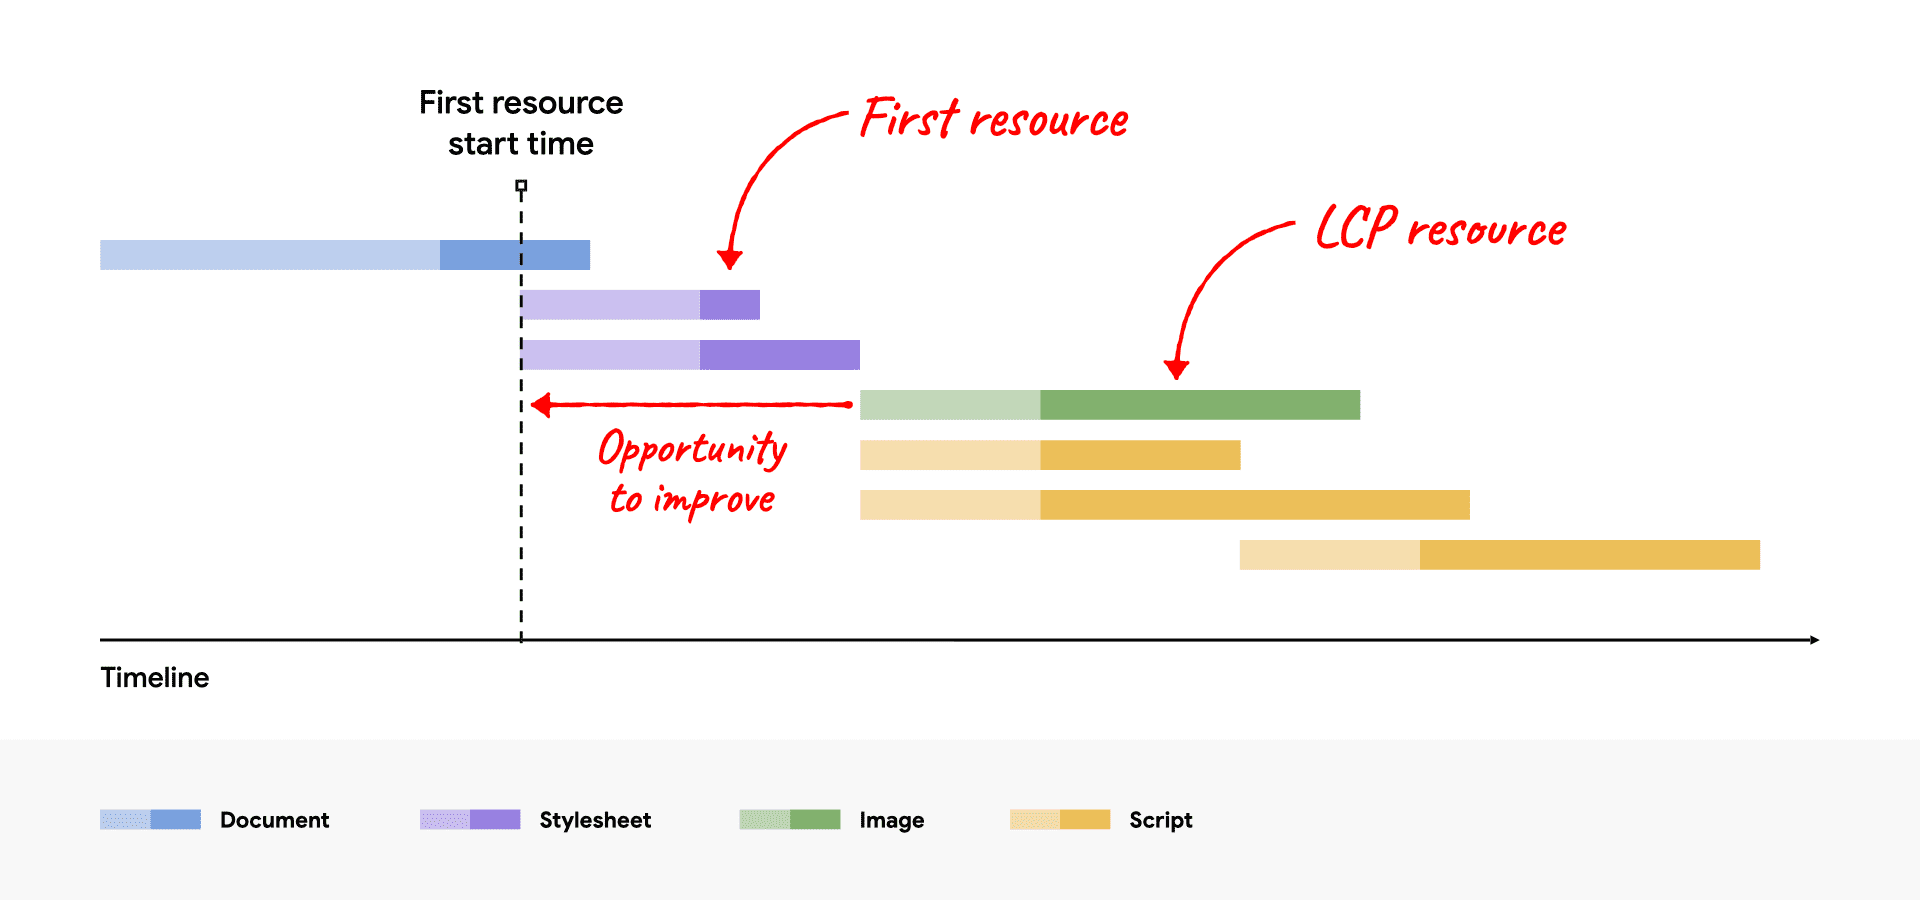 Ein Netzwerk-Wasserfalldiagramm, das die LCP-Ressource nach der ersten Ressource zeigt und Verbesserungsmöglichkeiten zeigt